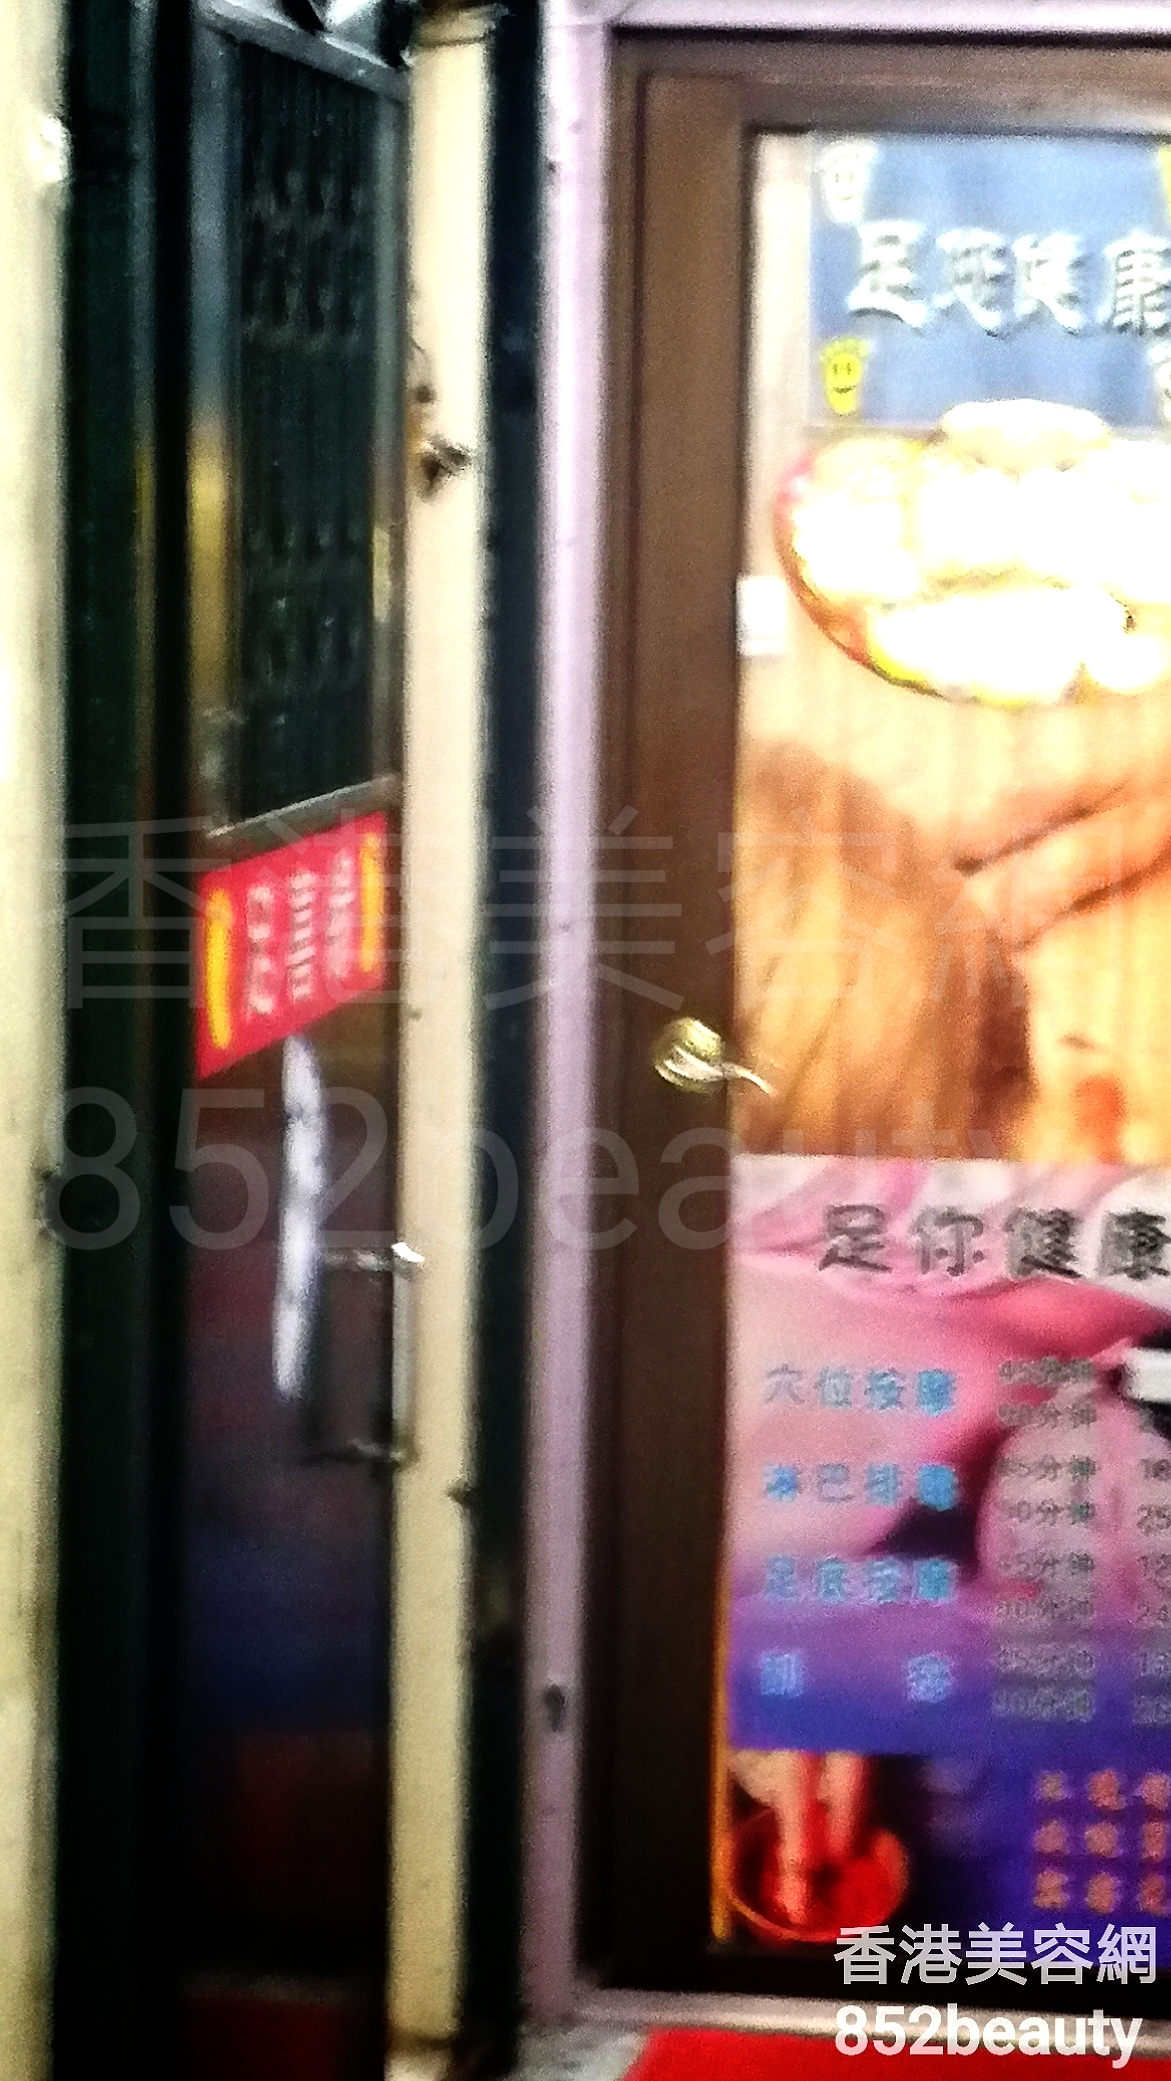 香港美容網 Hong Kong Beauty Salon 美容院 / 美容師: 足喜緣